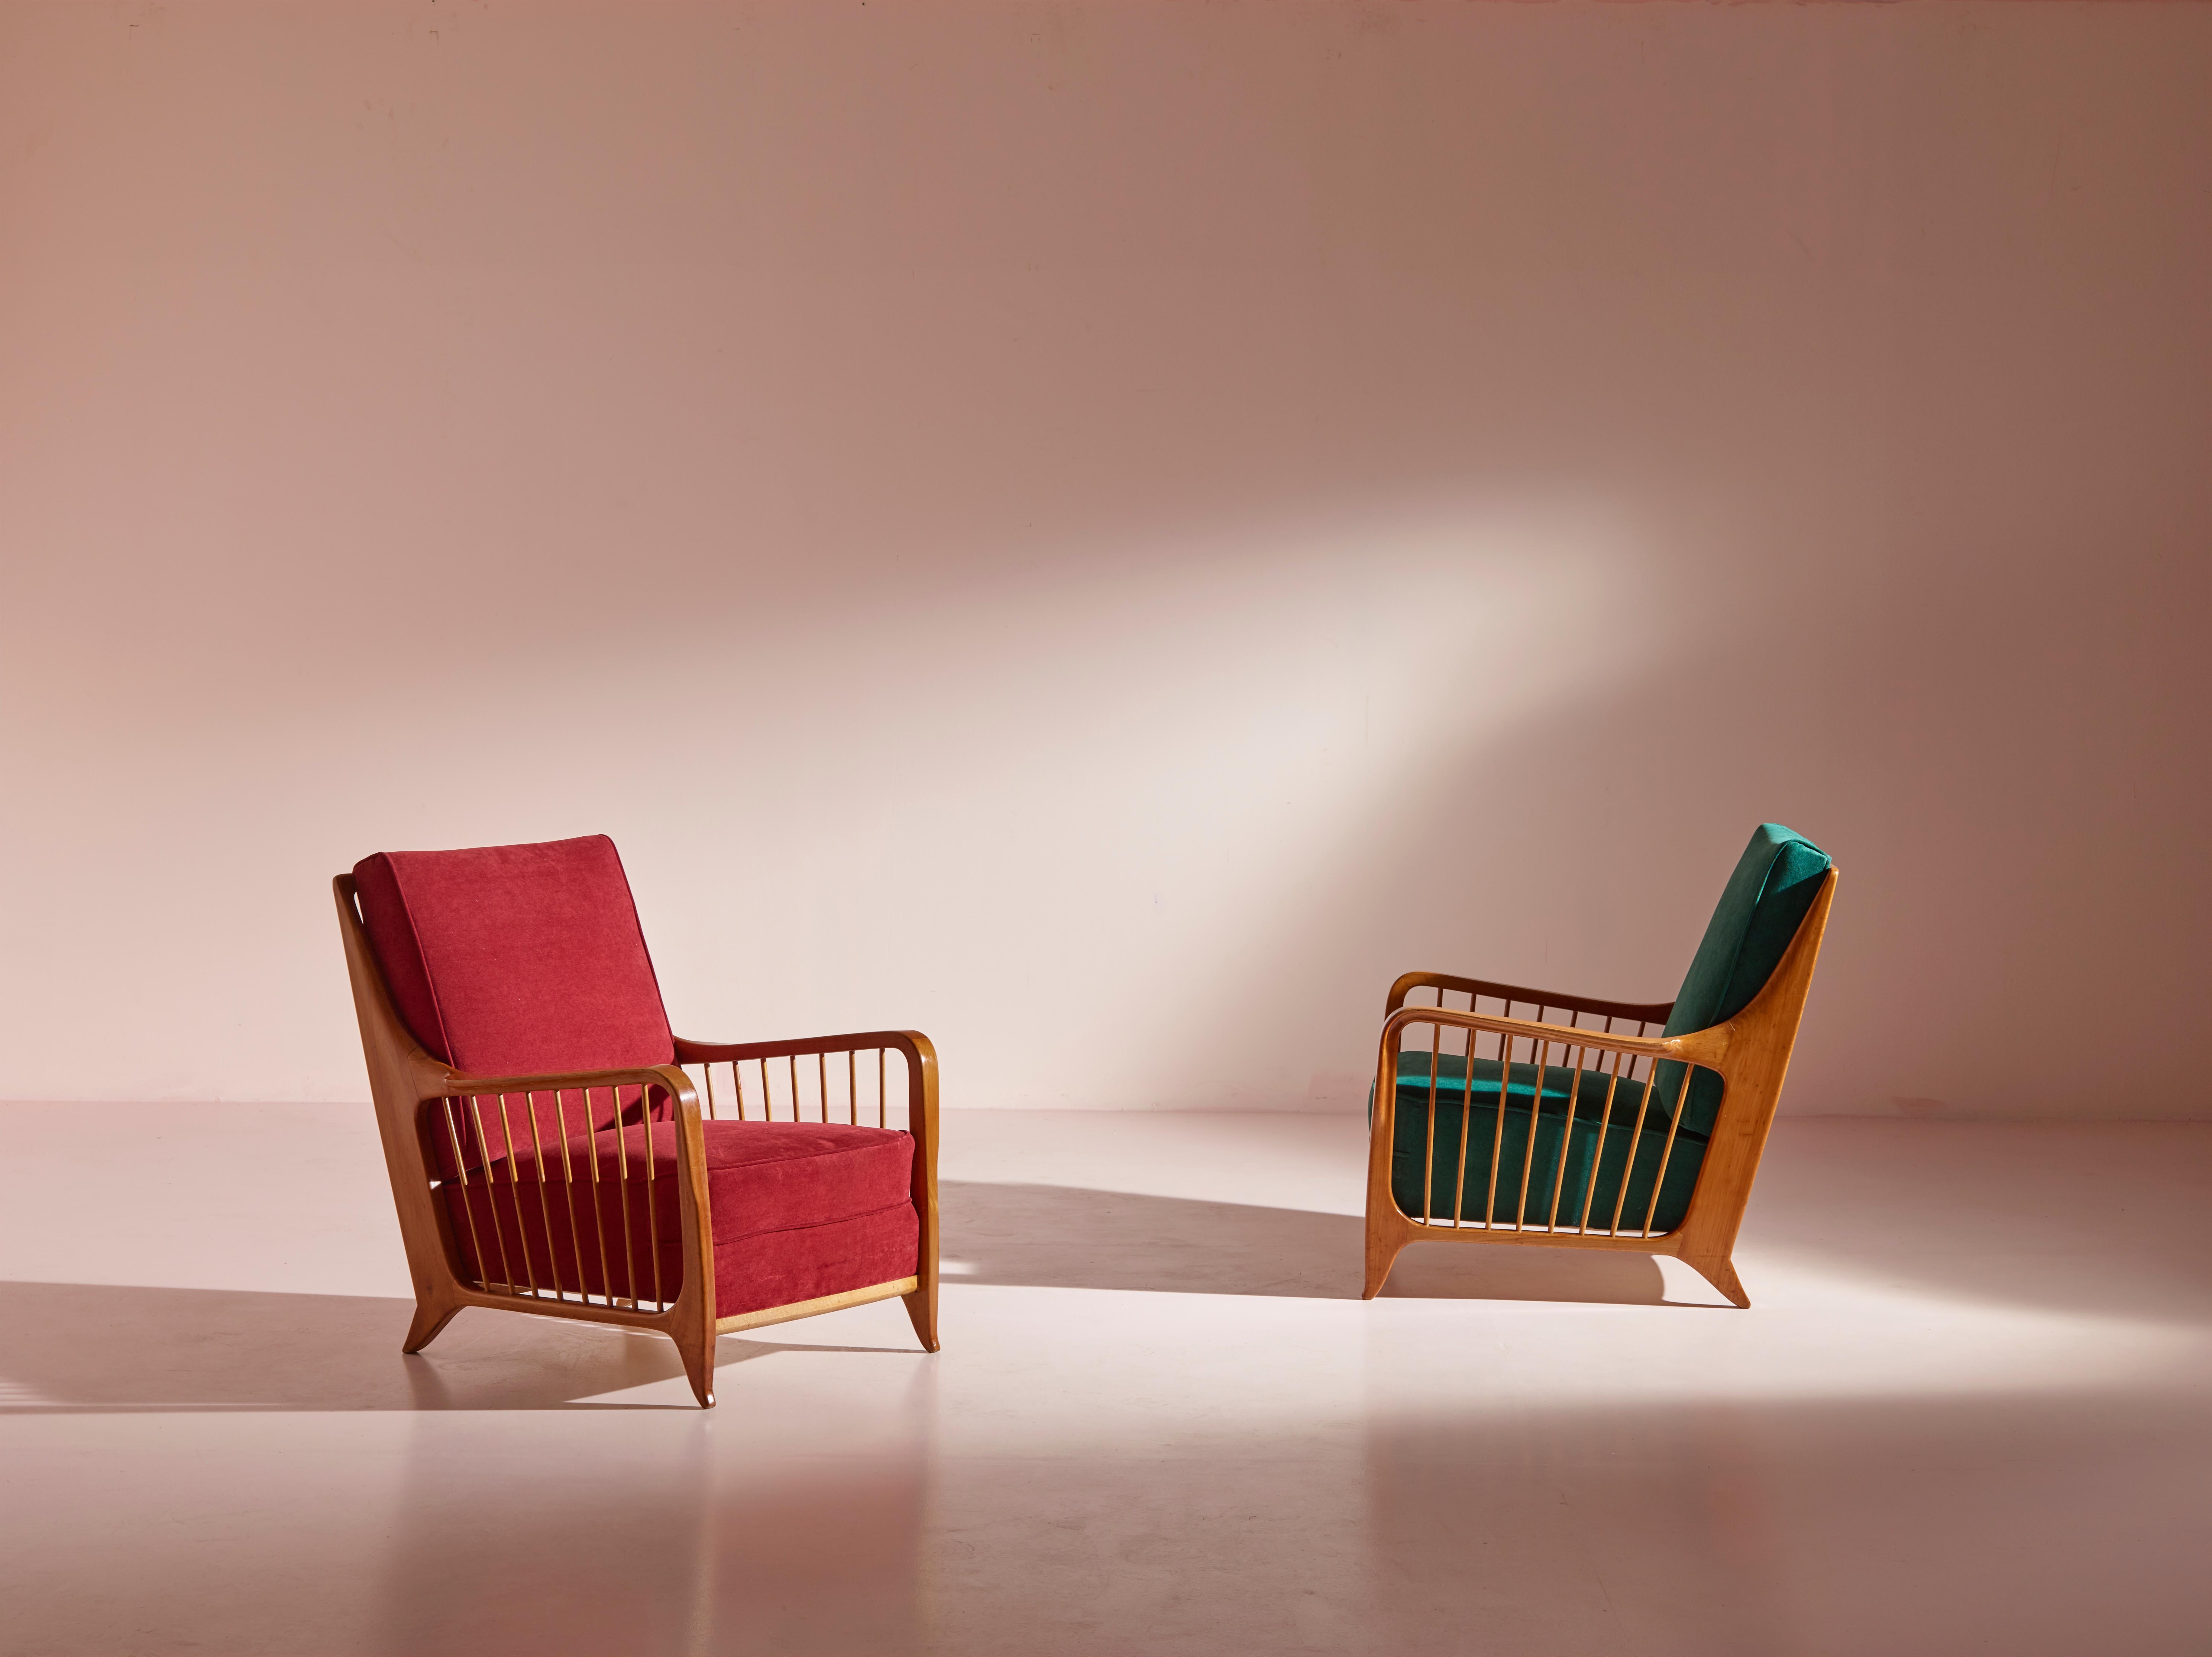 Ein außergewöhnliches und seltenes Sesselpaar, das Modell 118/f des bekannten italienischen Designers Paolo Buffa. Diese in den 1950er Jahren in Italien gefertigten Sessel sind nicht einfach nur Möbelstücke, sondern Meisterwerke des Designs und der